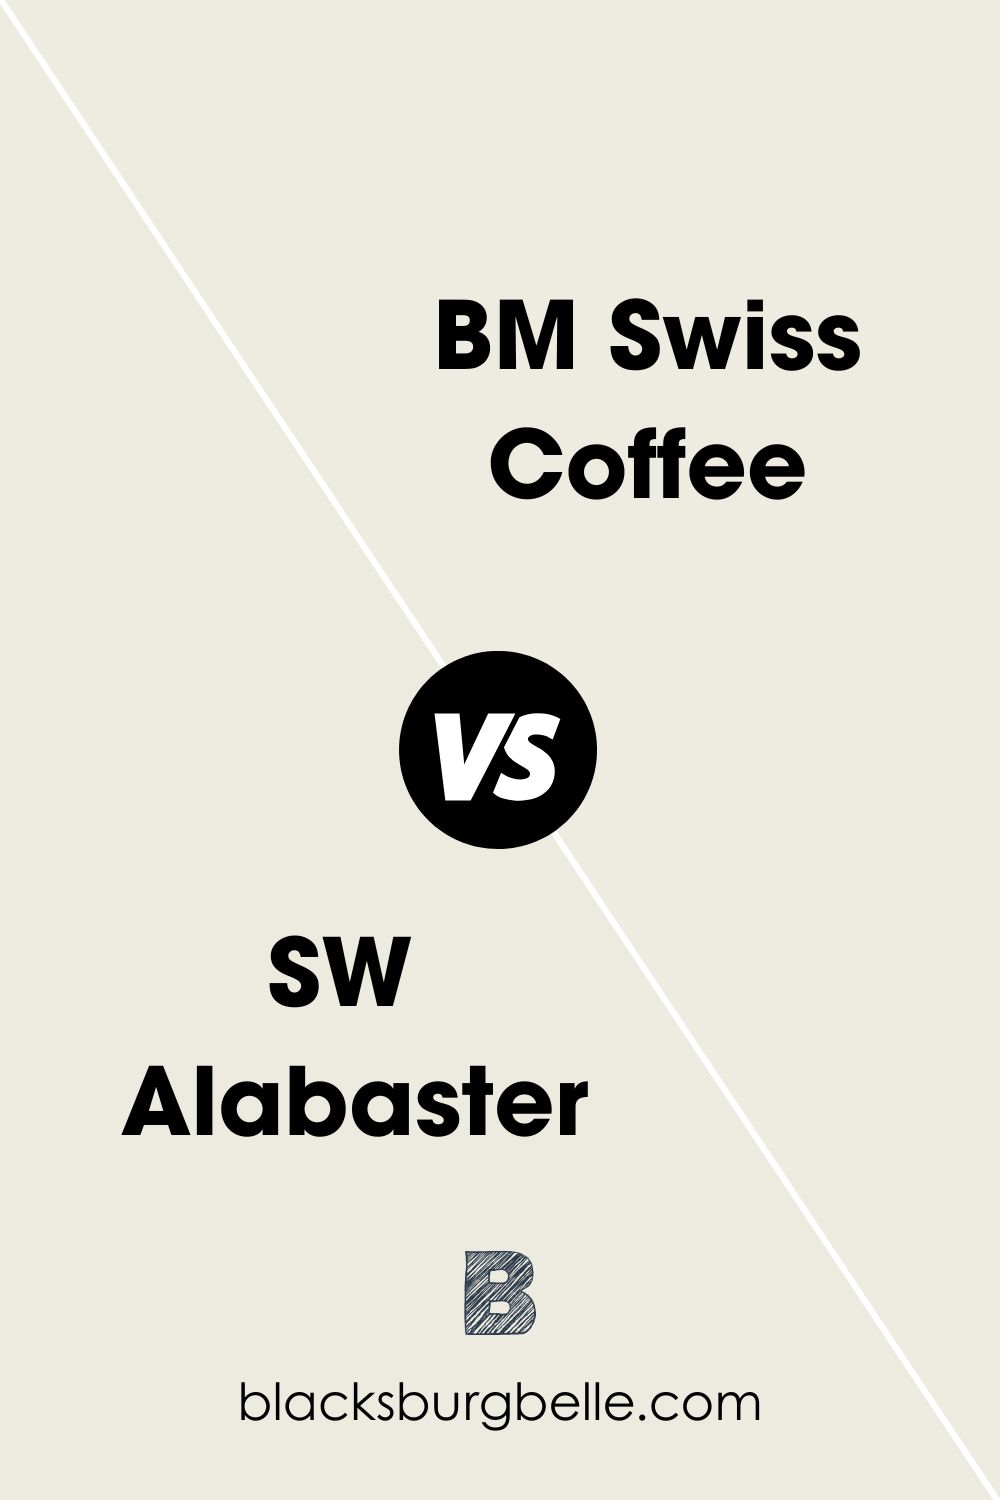 SW Alabaster vs BM Swiss Coffee